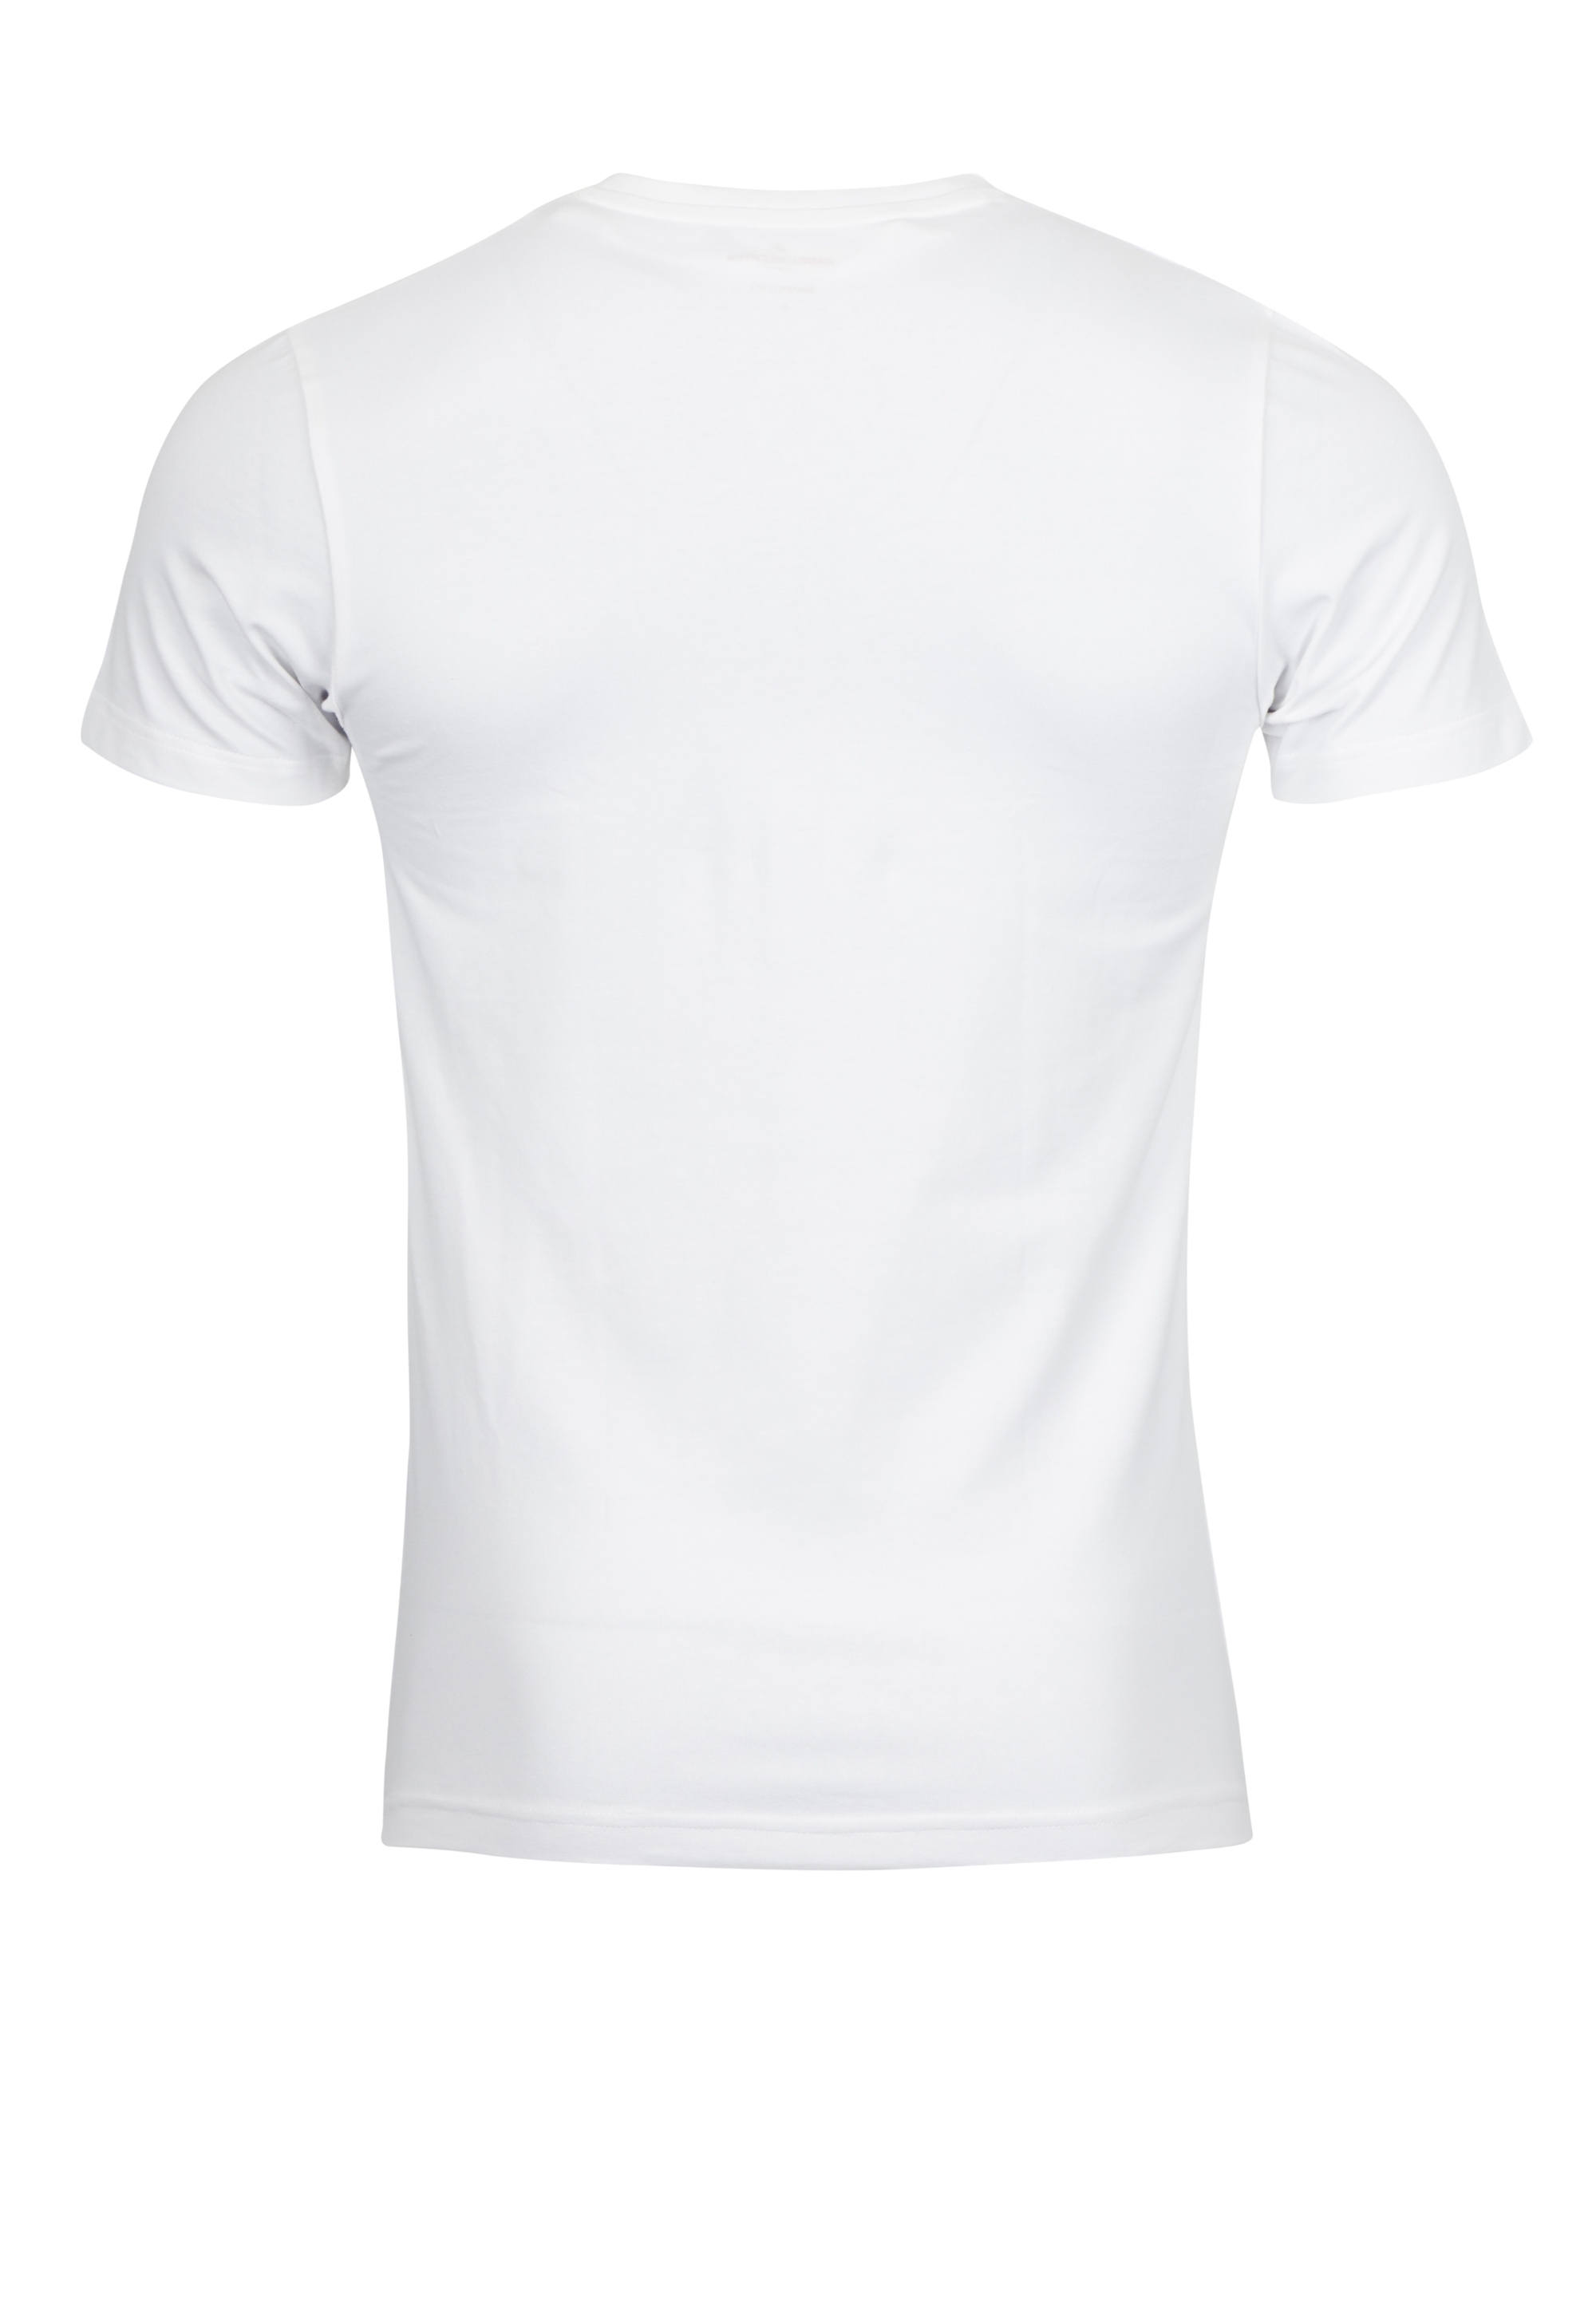 Doppelpack T-Shirt V-Ausschnitt Shape-fit | HECHTER PARIS Onlineshop Der offizielle